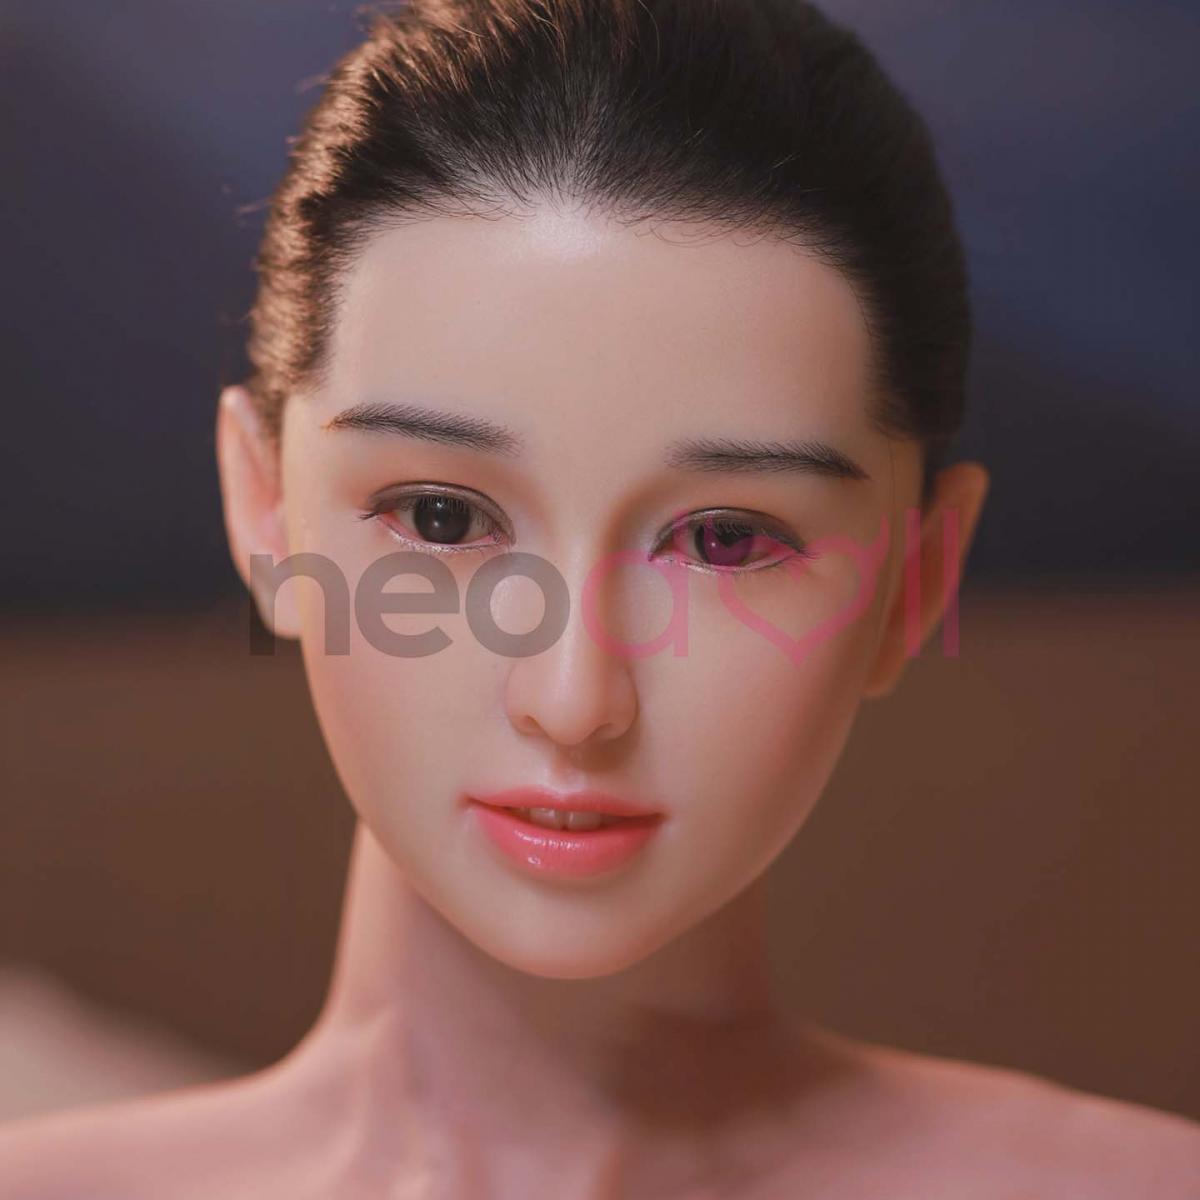 Neodoll Sugar Babe - Alysa - Sex Doll Head - M16 Compatible - Silicon